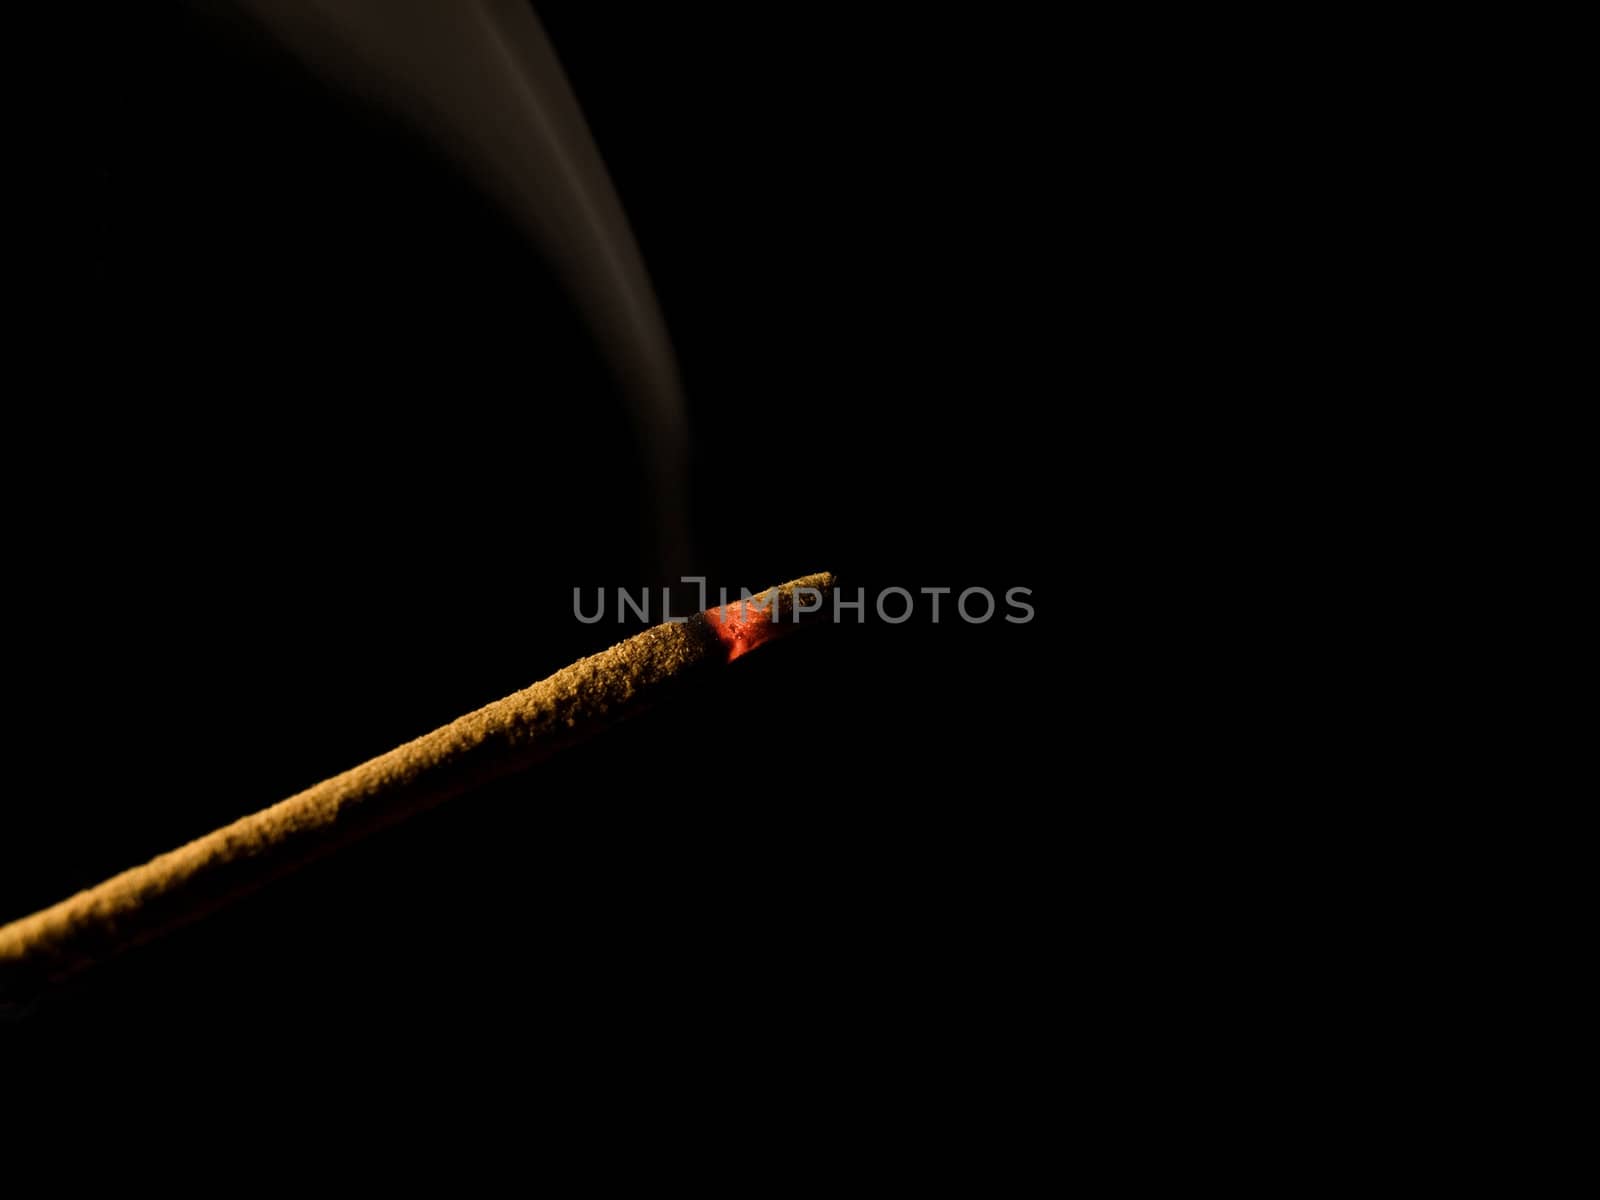 incense stick by vkoletic